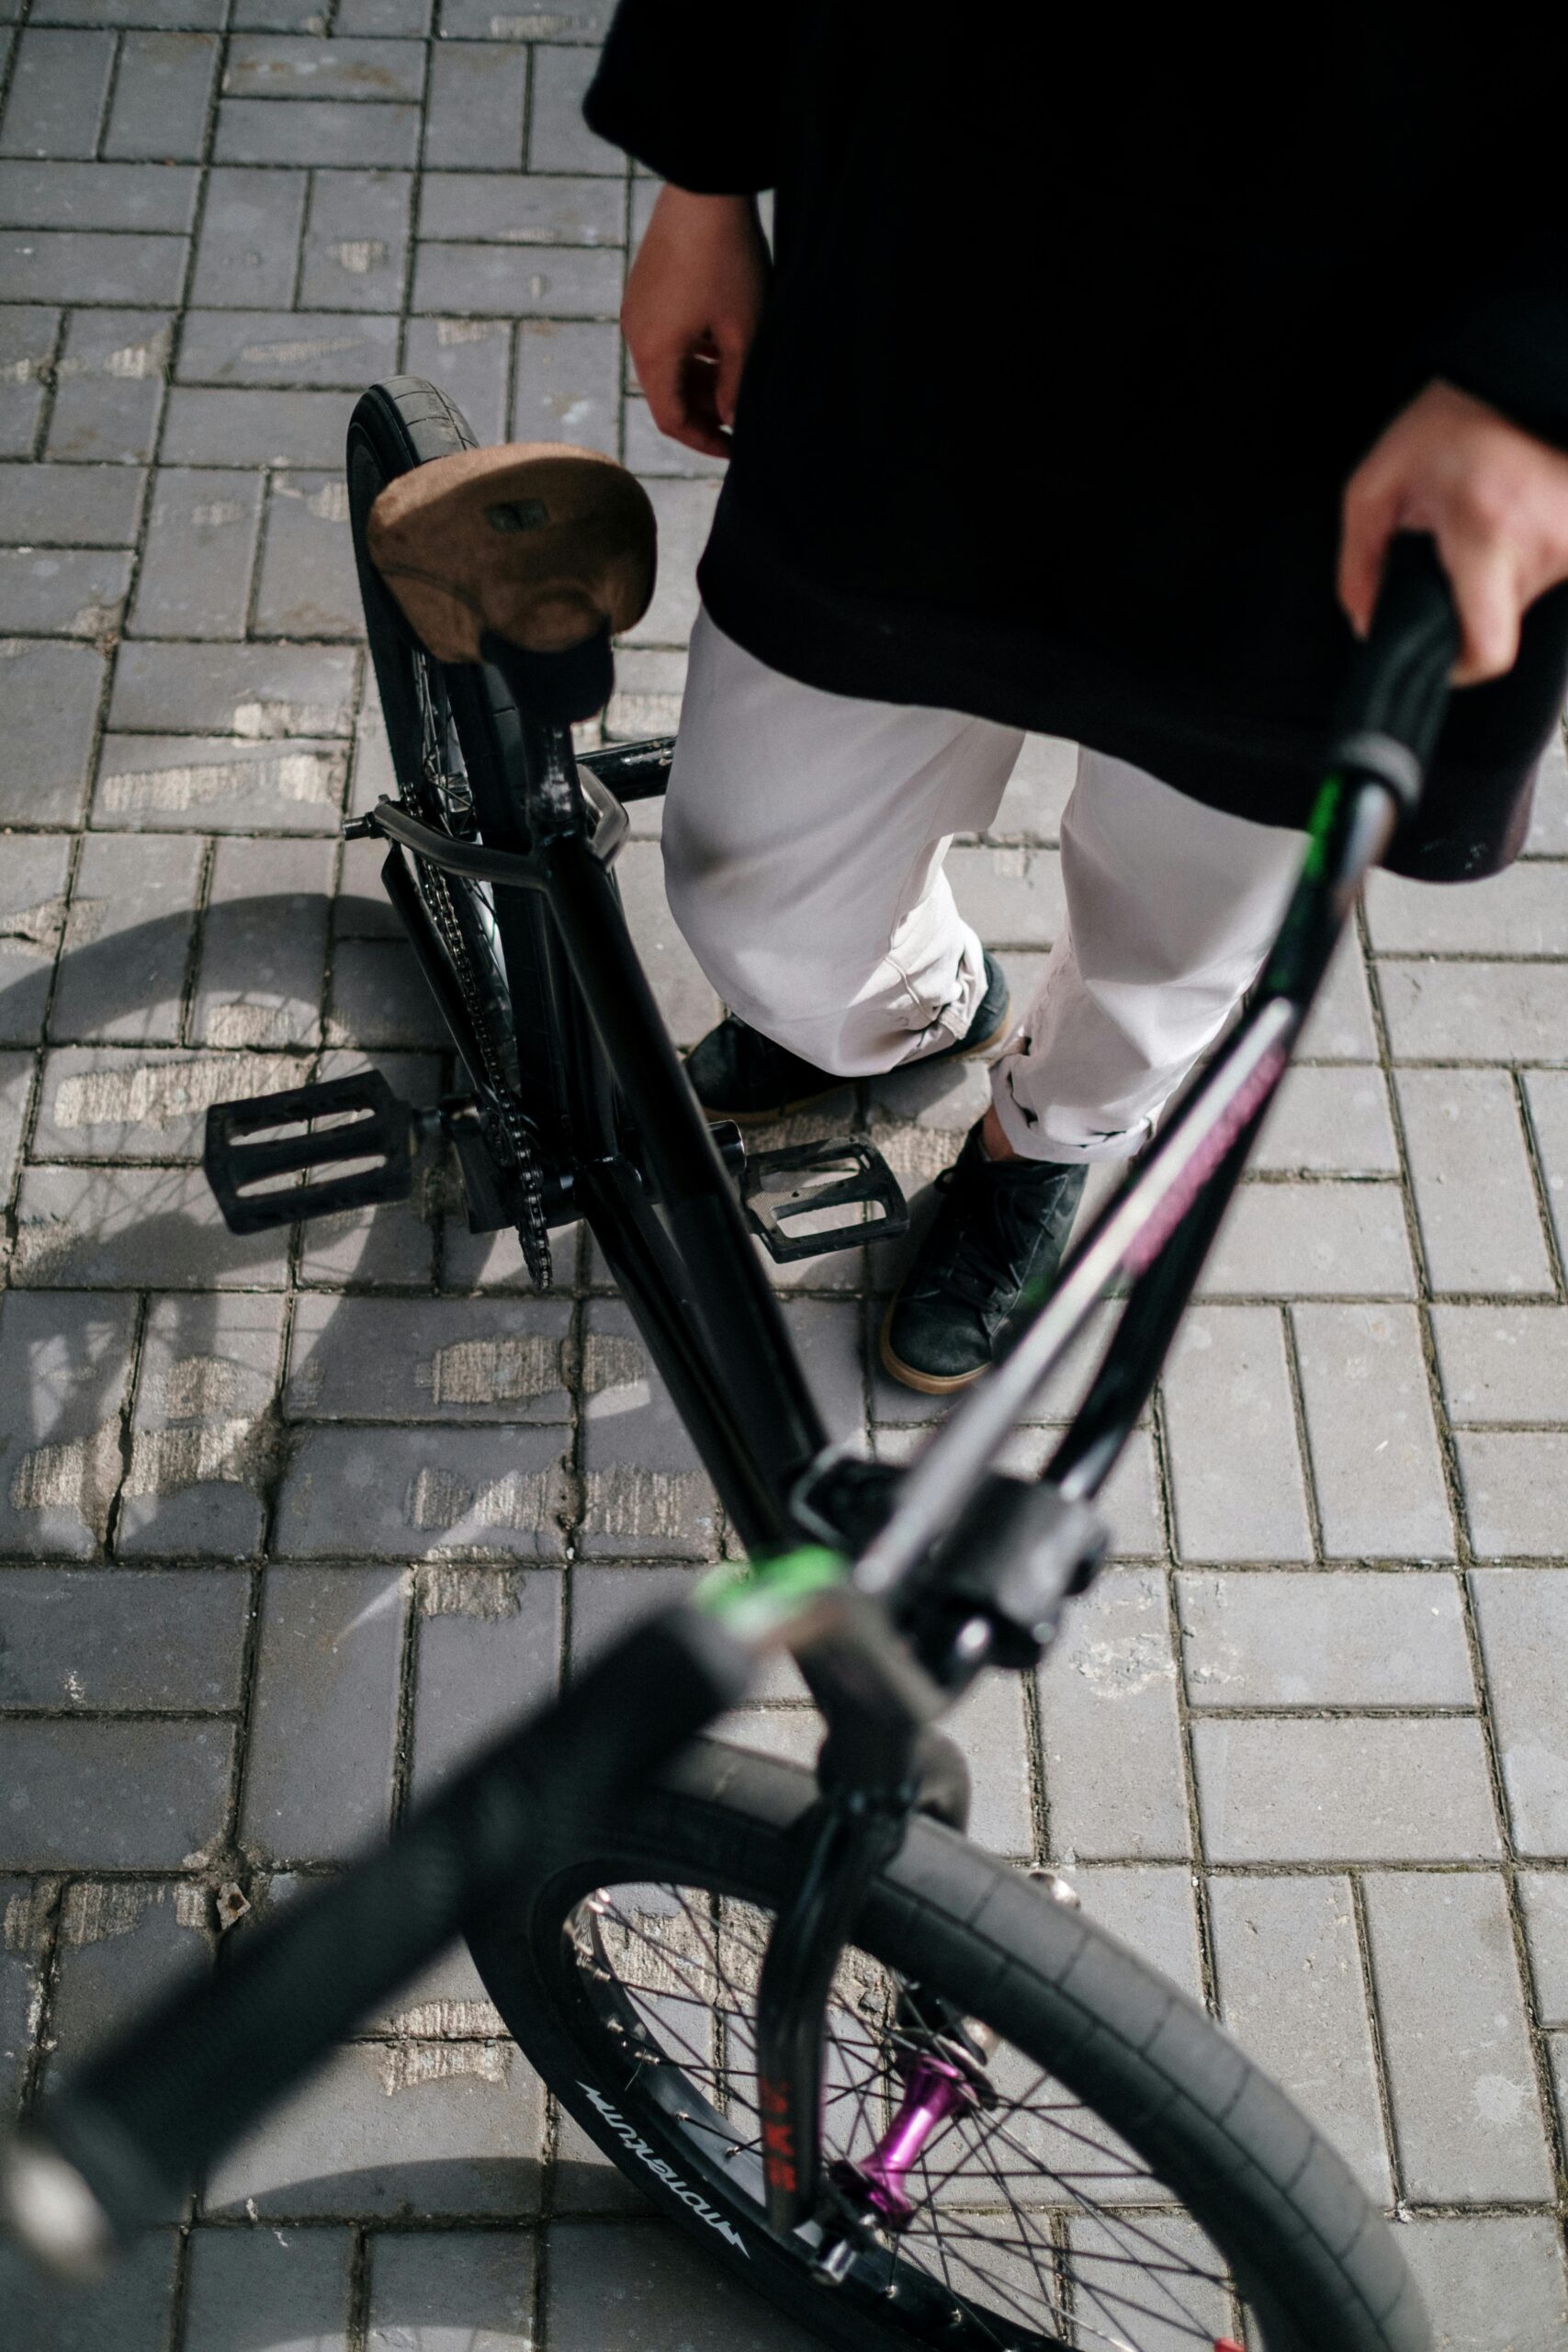 Smart Cykelförvaring: Cykelboxar och Tvåvåningscykelställ för Optimerad Platsanvändning